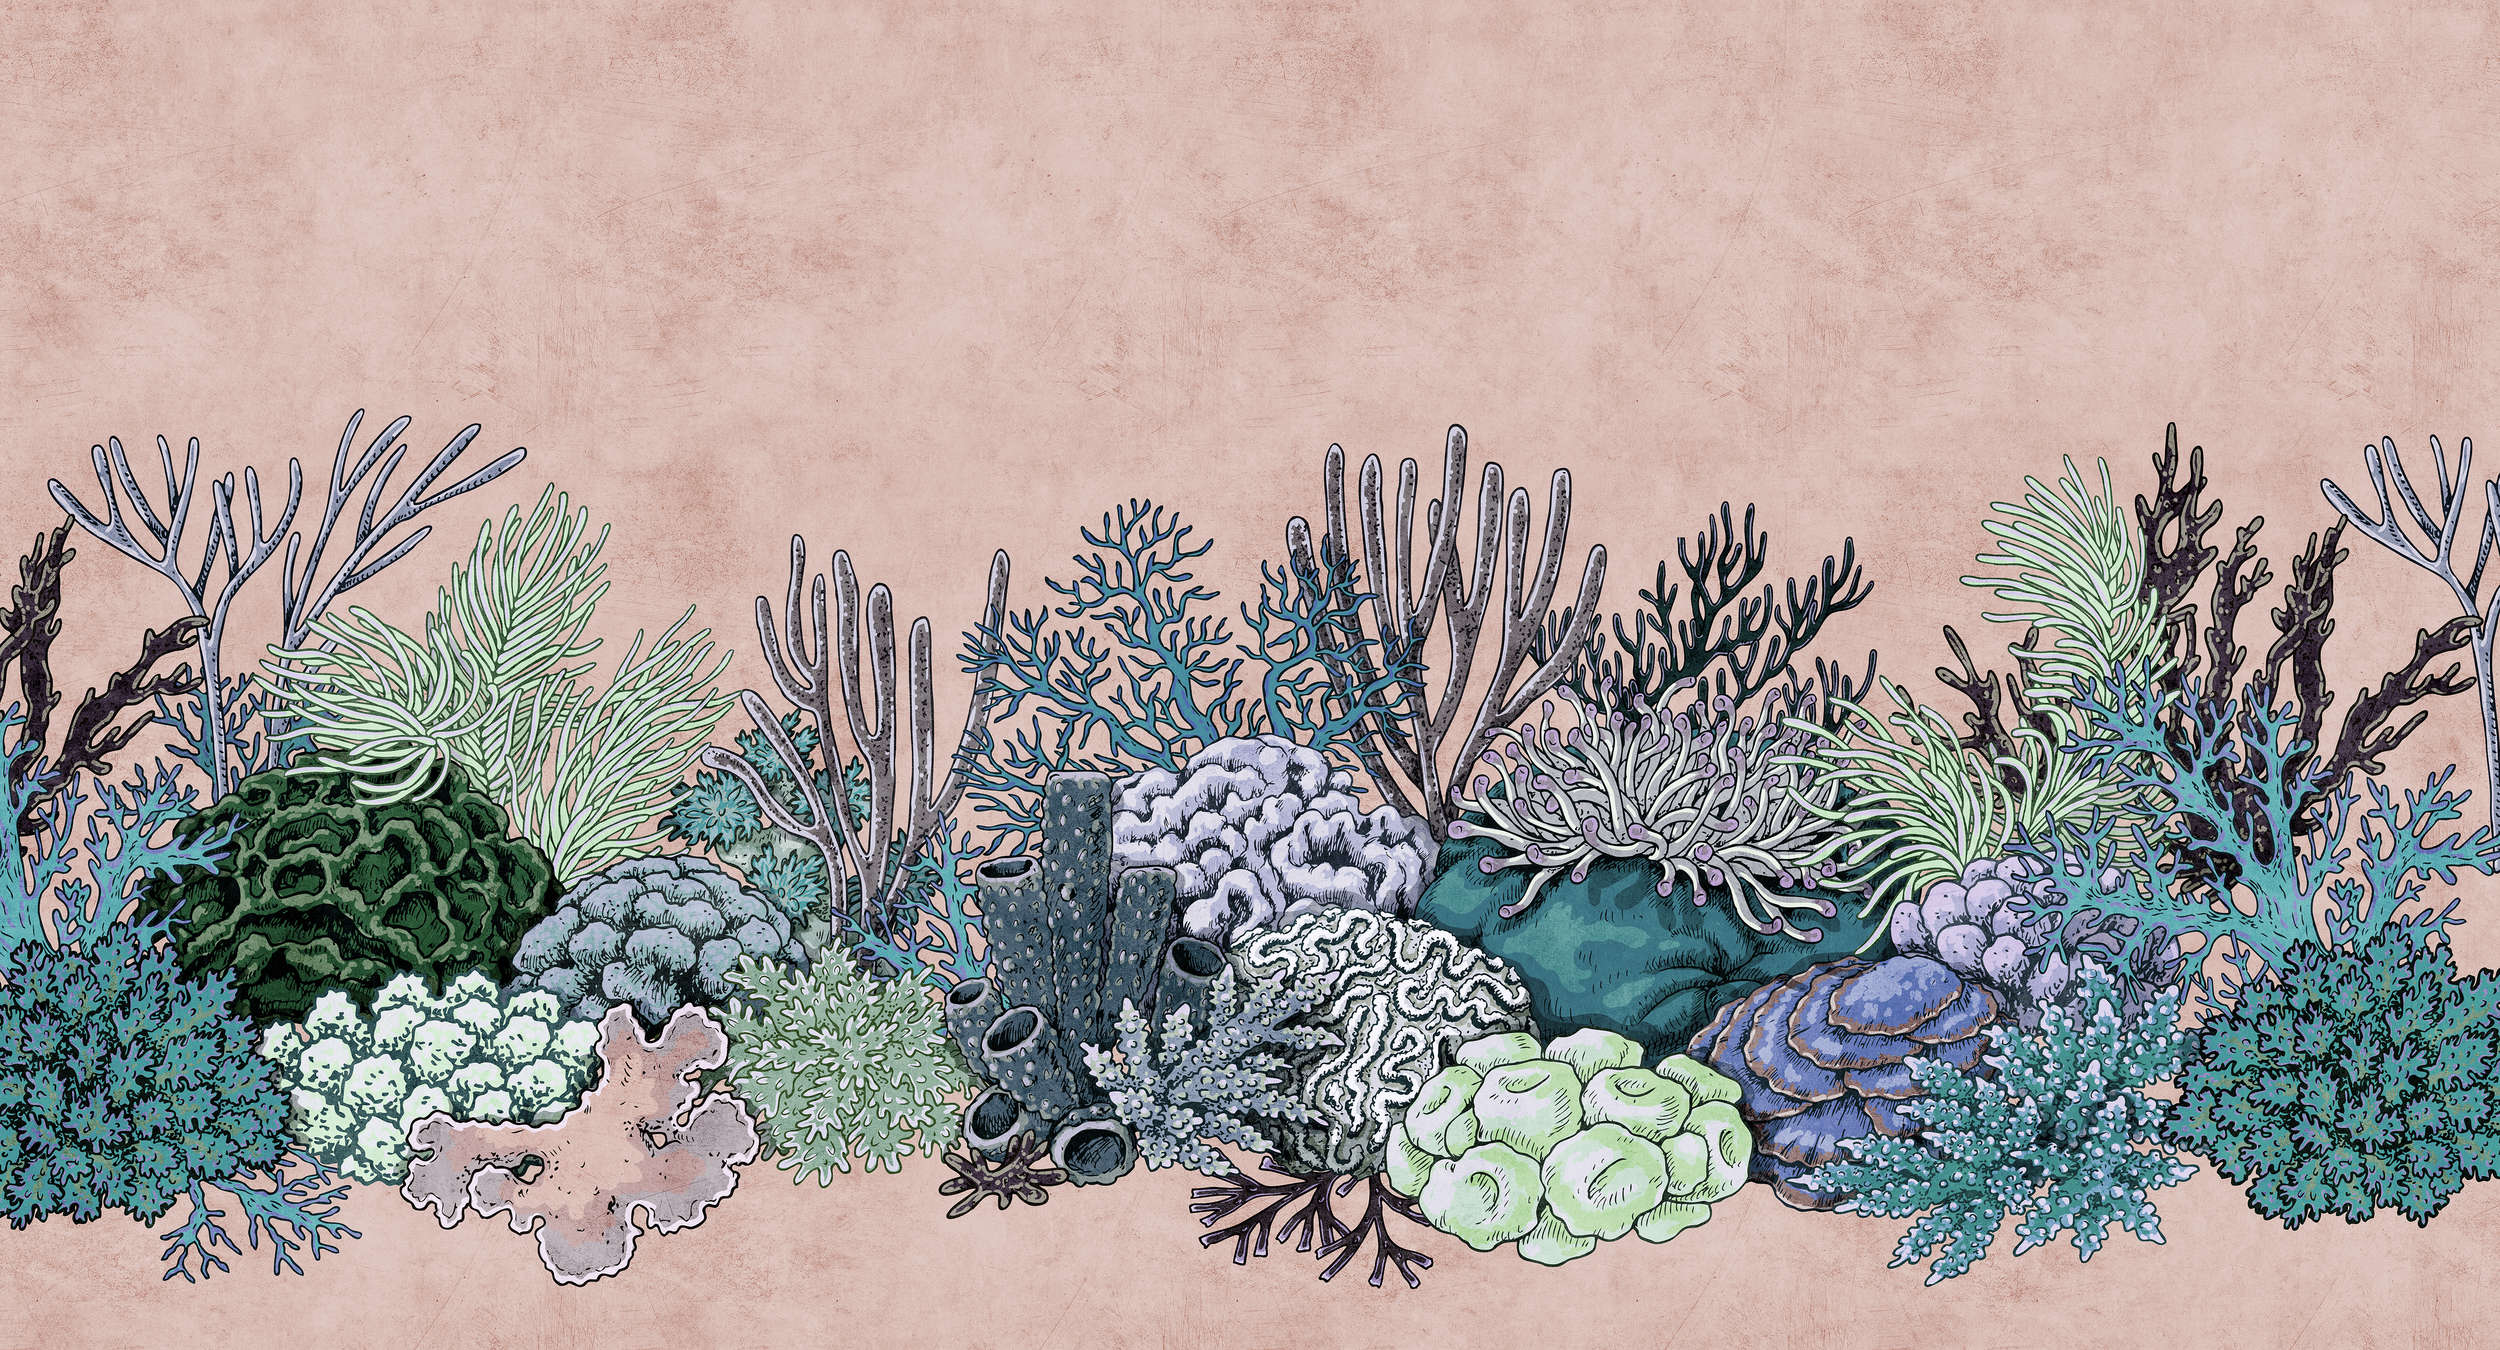             Octopus's Garden 2 - Koraalbehang in vloeipapierstructuur in tekenstijl - groen, roze | parelmoerachtig glad vlies
        